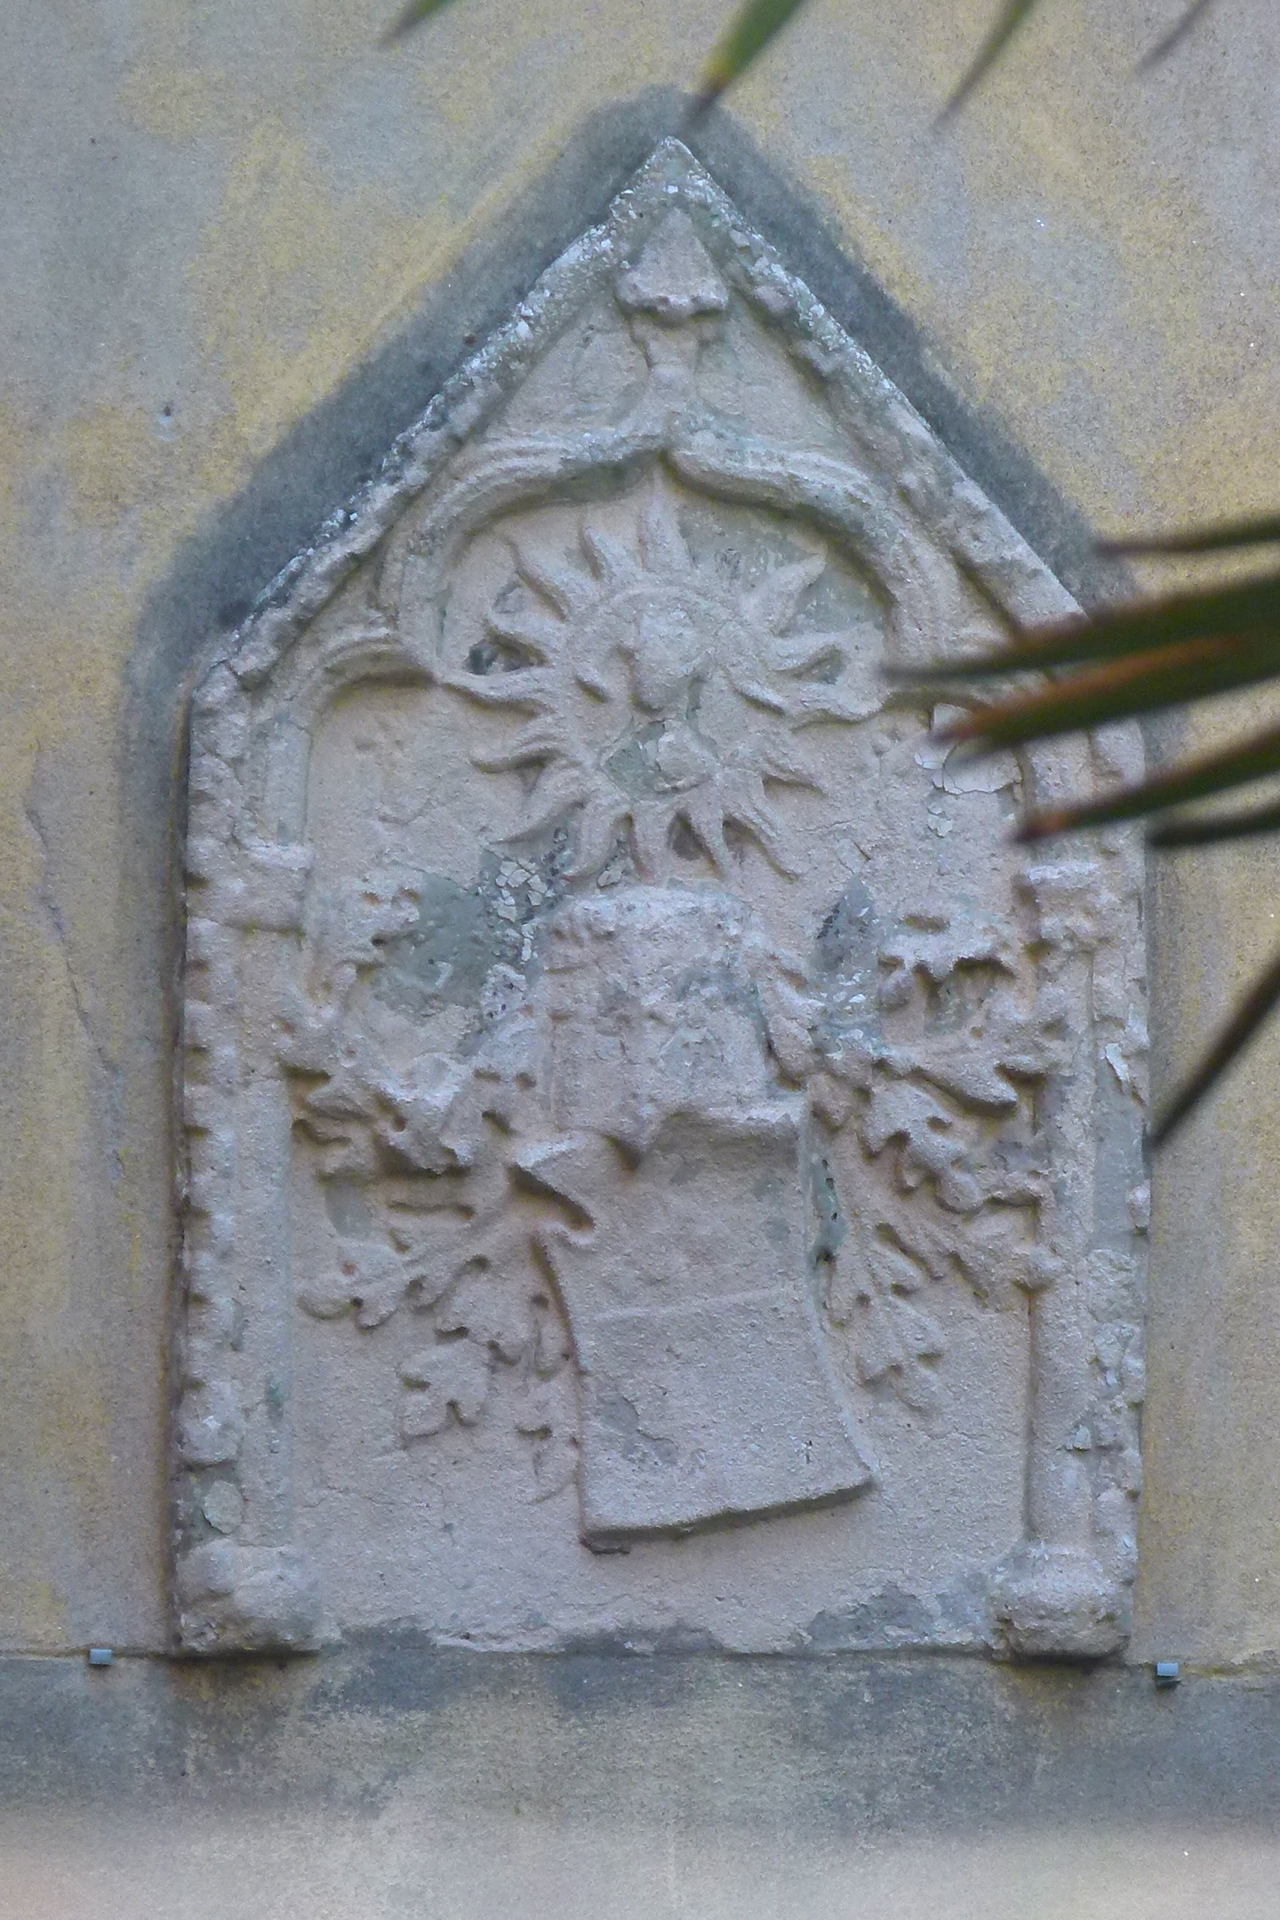 stemma gentilizio, motivi decorativi fogliacei e sole raggiato (rilievo, opera isolata) - ambito veneziano (secc. XIX-XX)